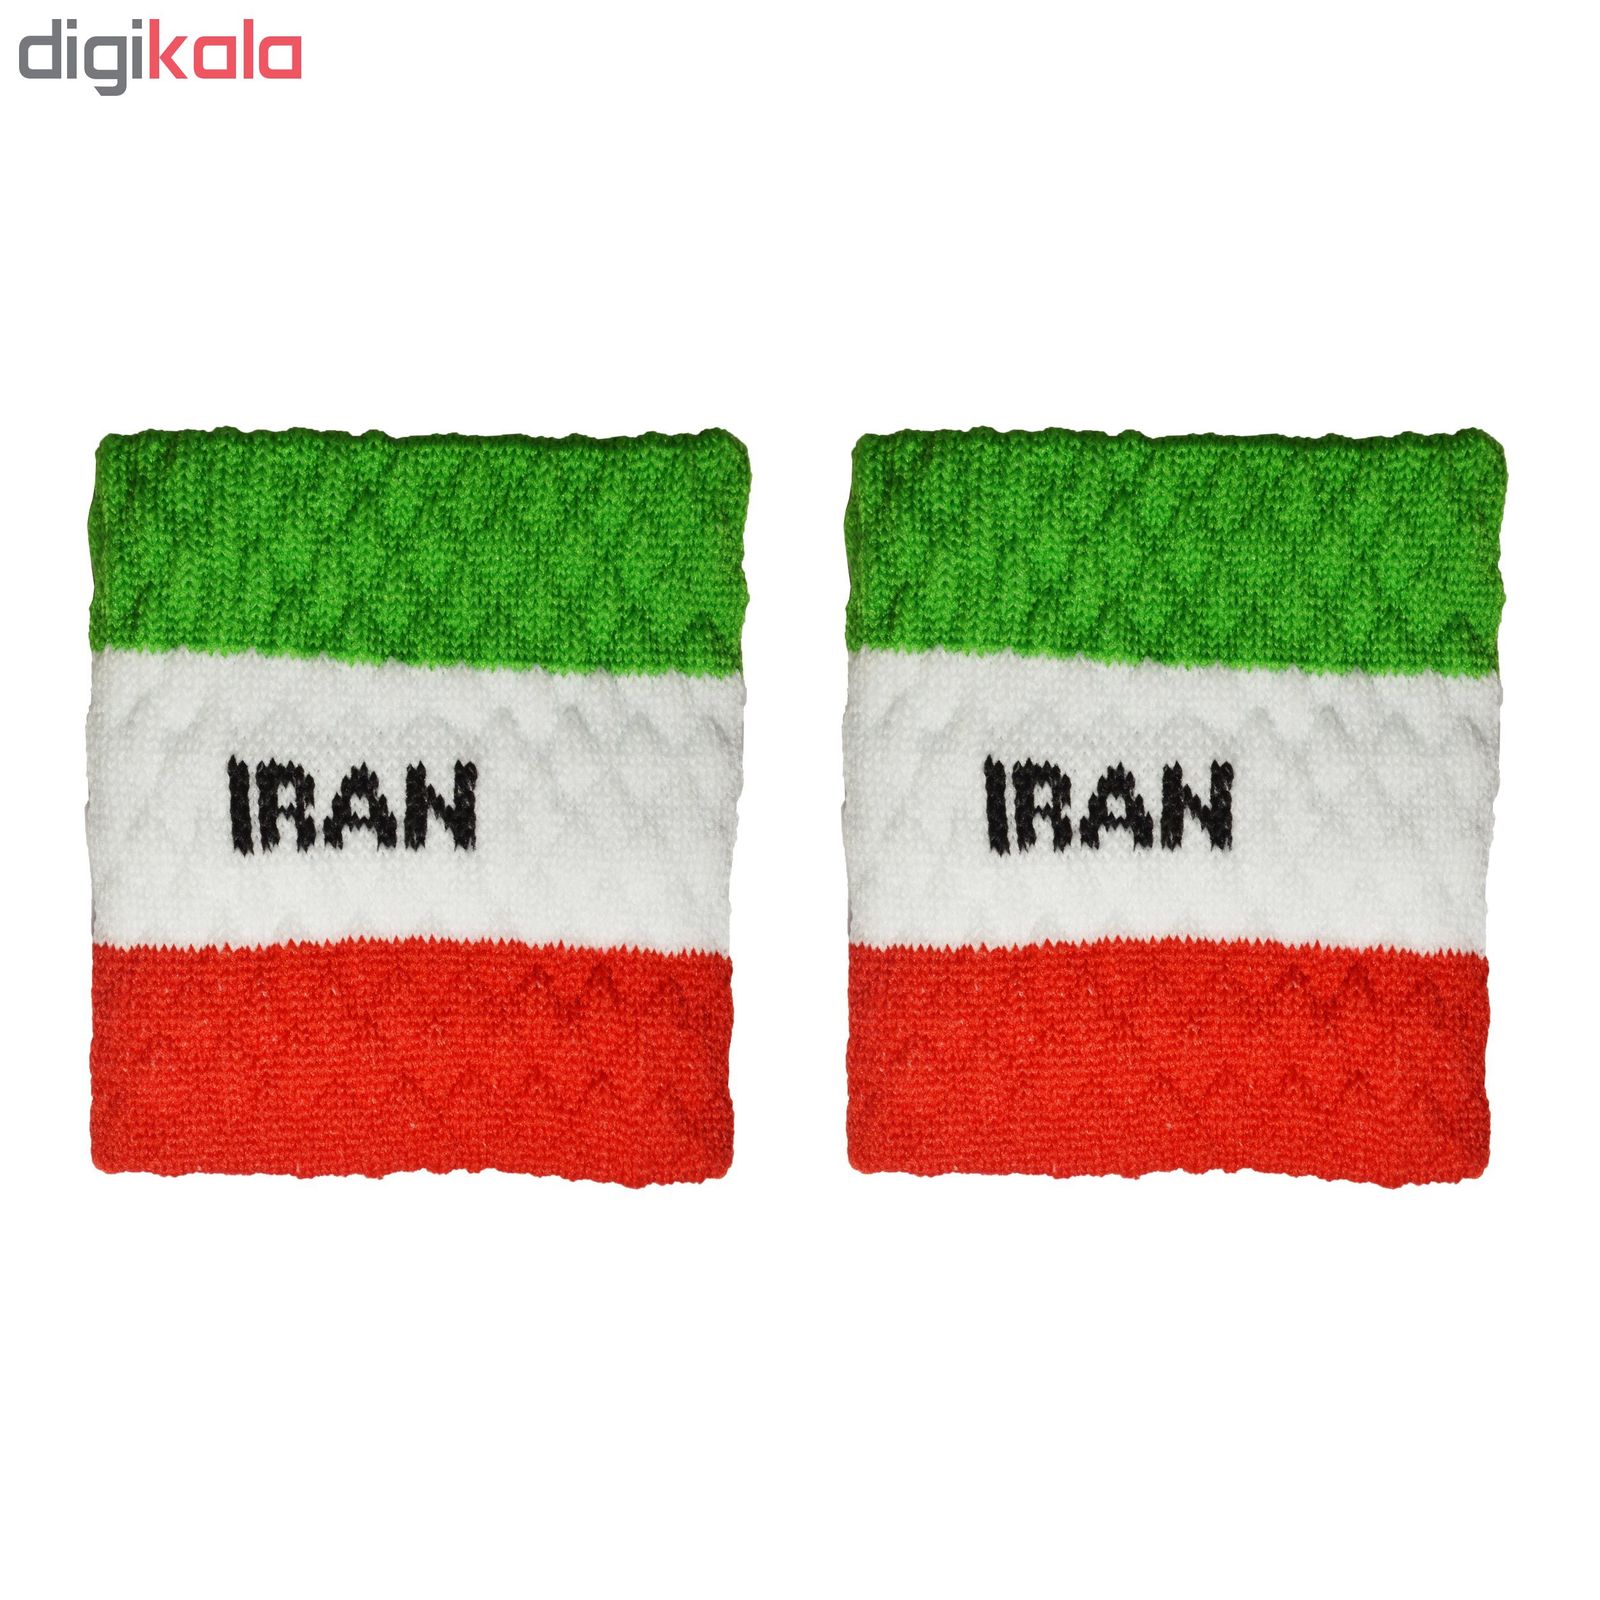 مچ بند ورزشی پرشیکا طرح پرچم کشور ایران بسته 2 عددی -  - 2